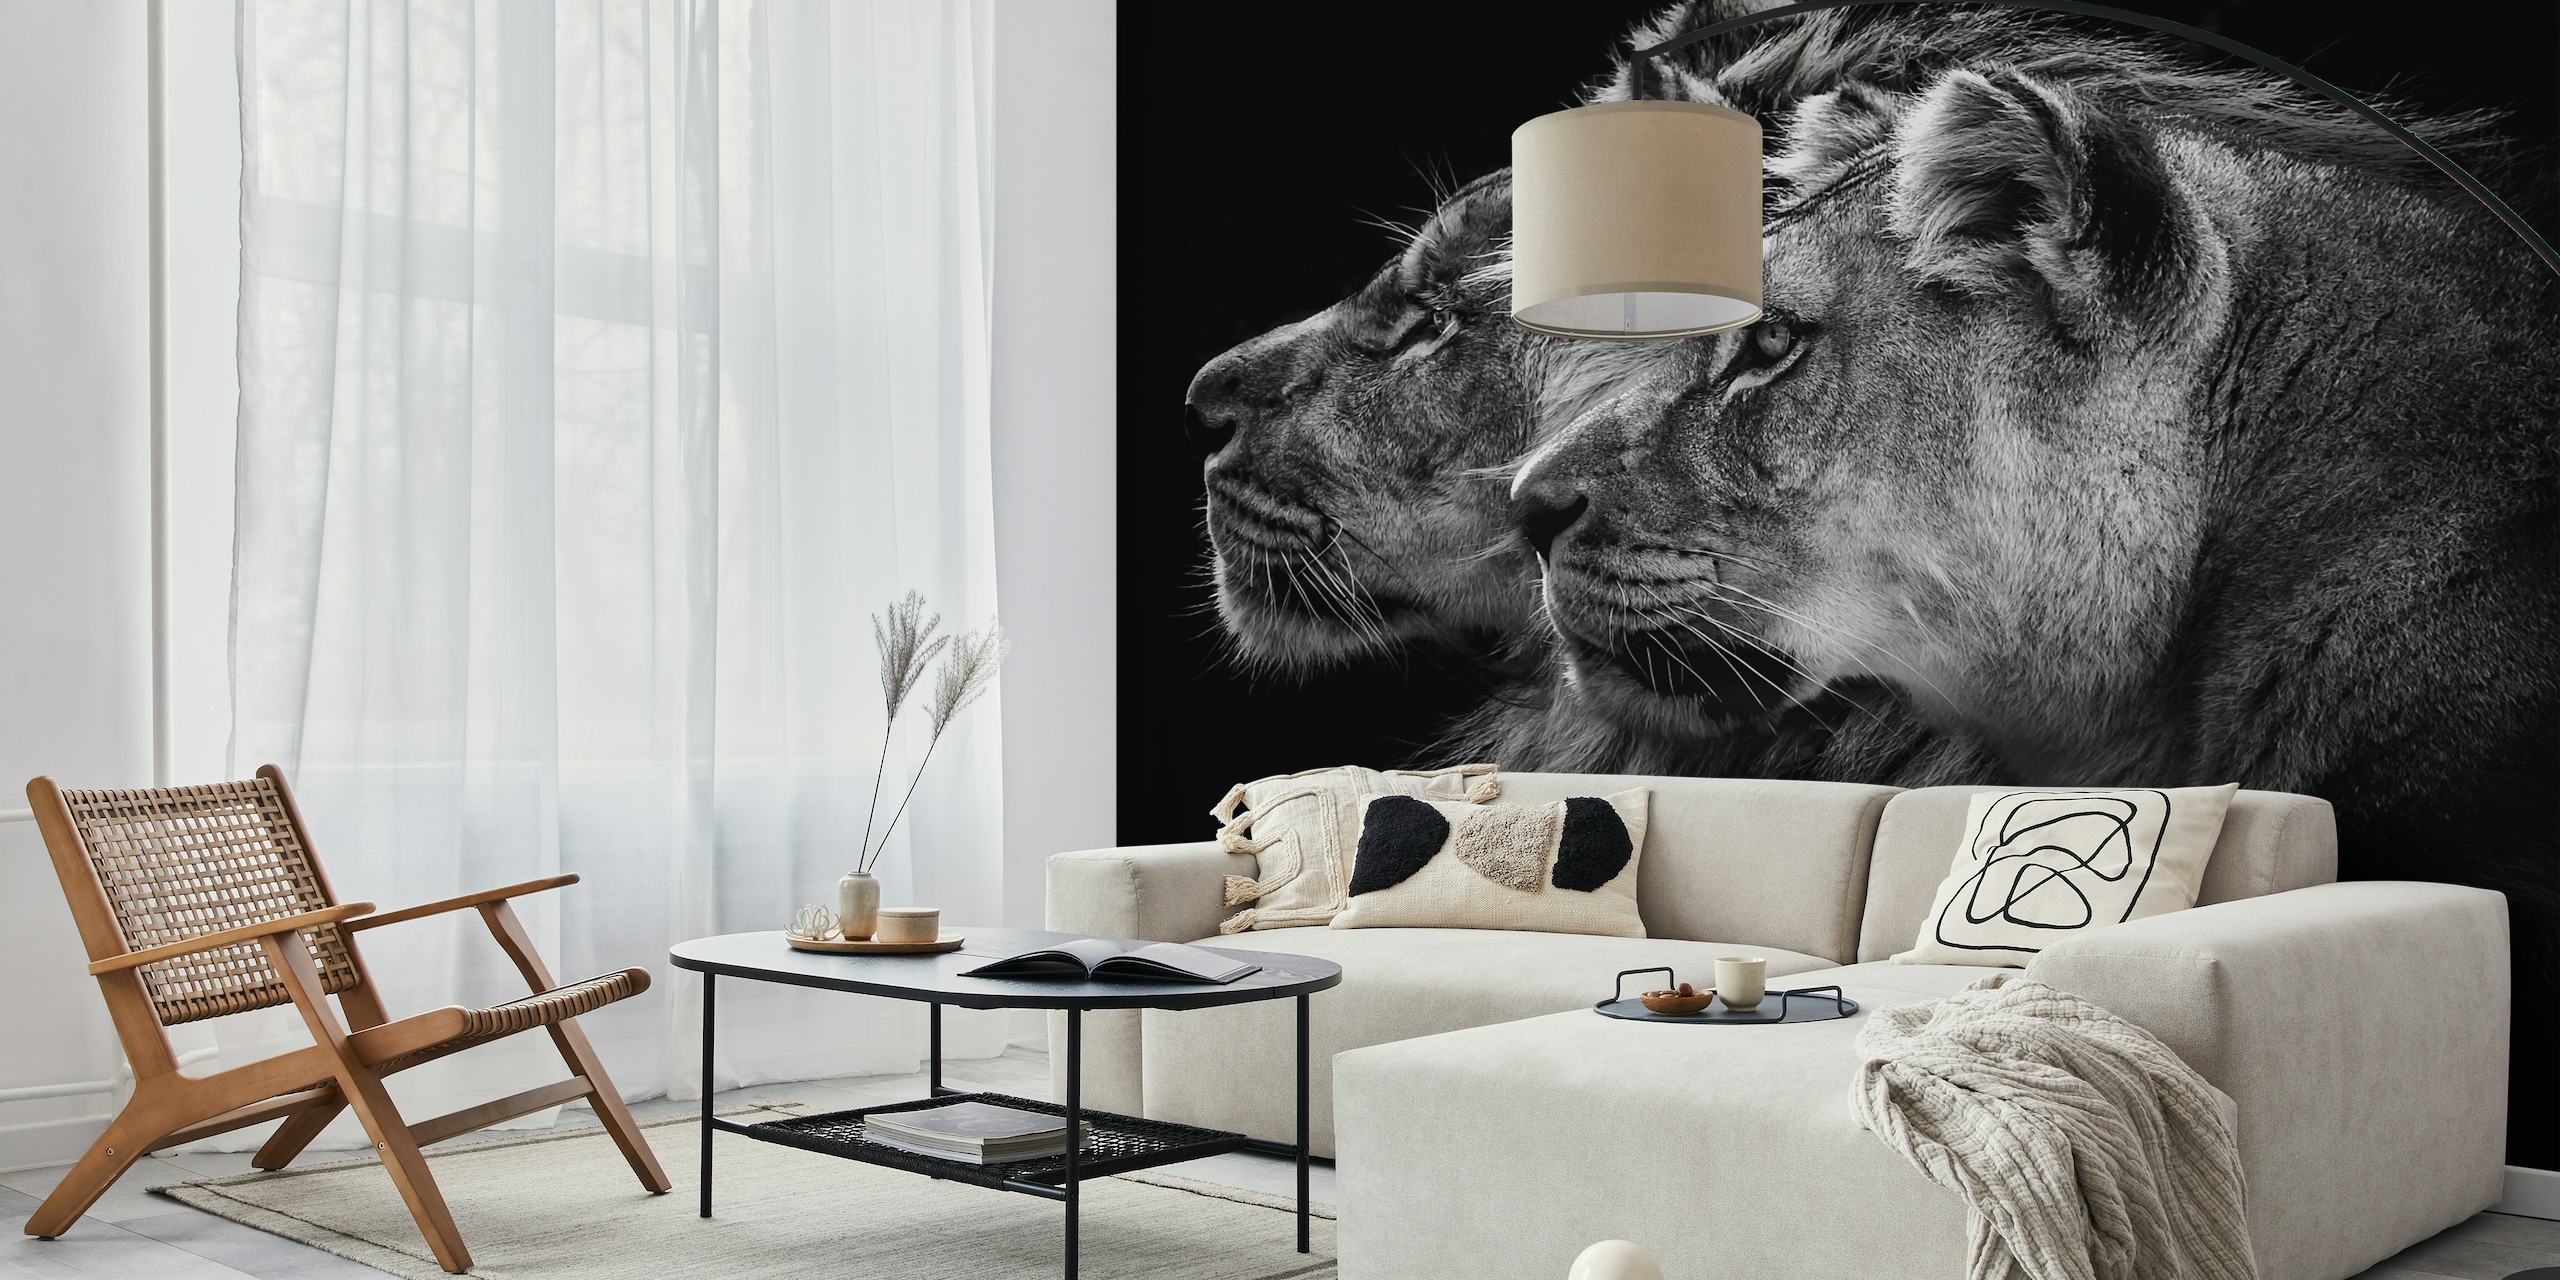 Mural en blanco y negro de un león y una leona de perfil sobre un fondo oscuro